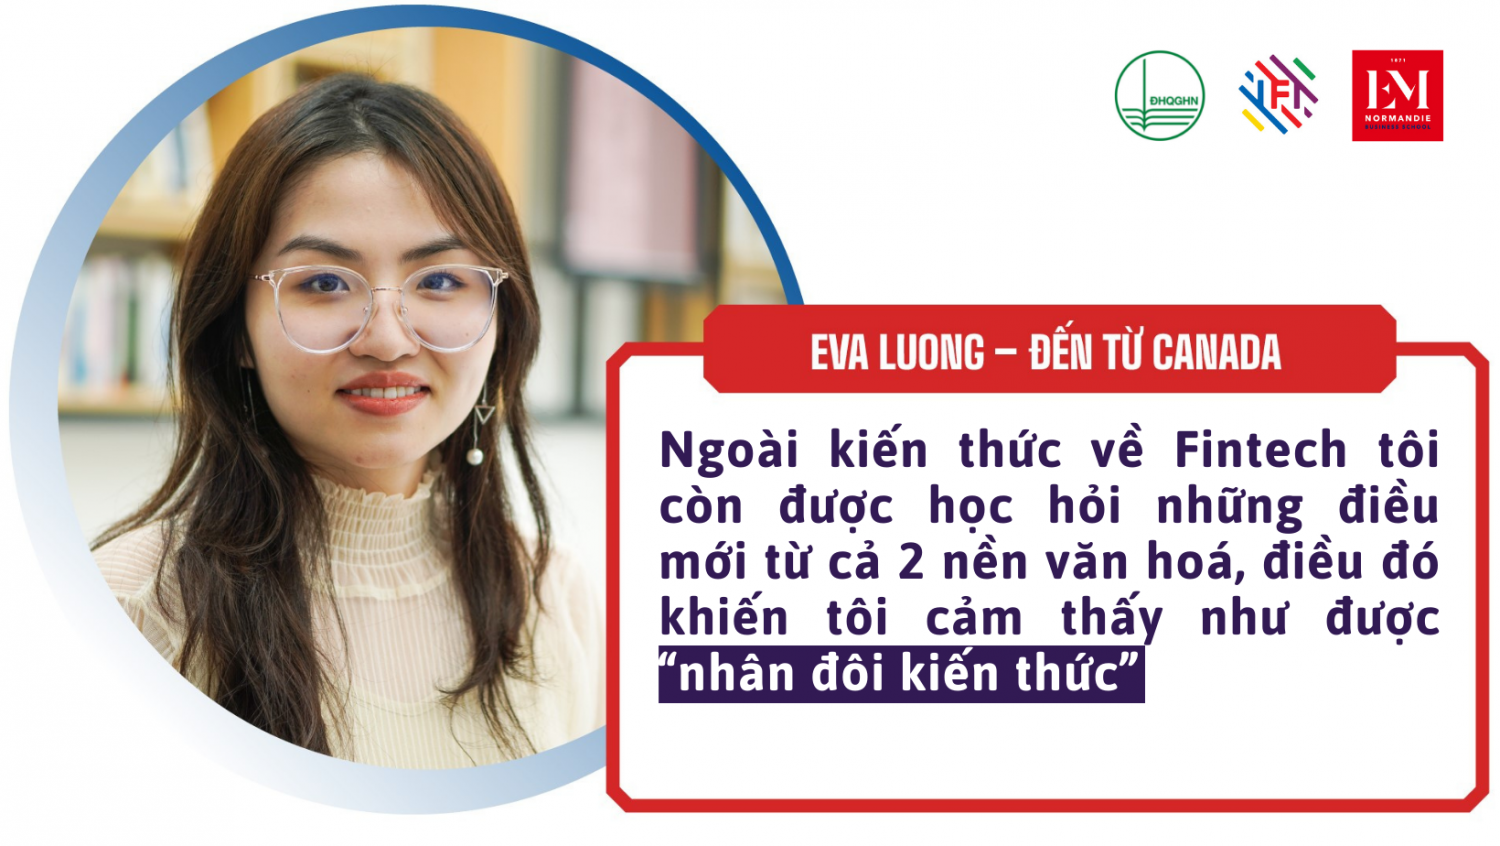 Chia sẻ của Eva Lương về chương trình Thạc sĩ Fintech tại IFI